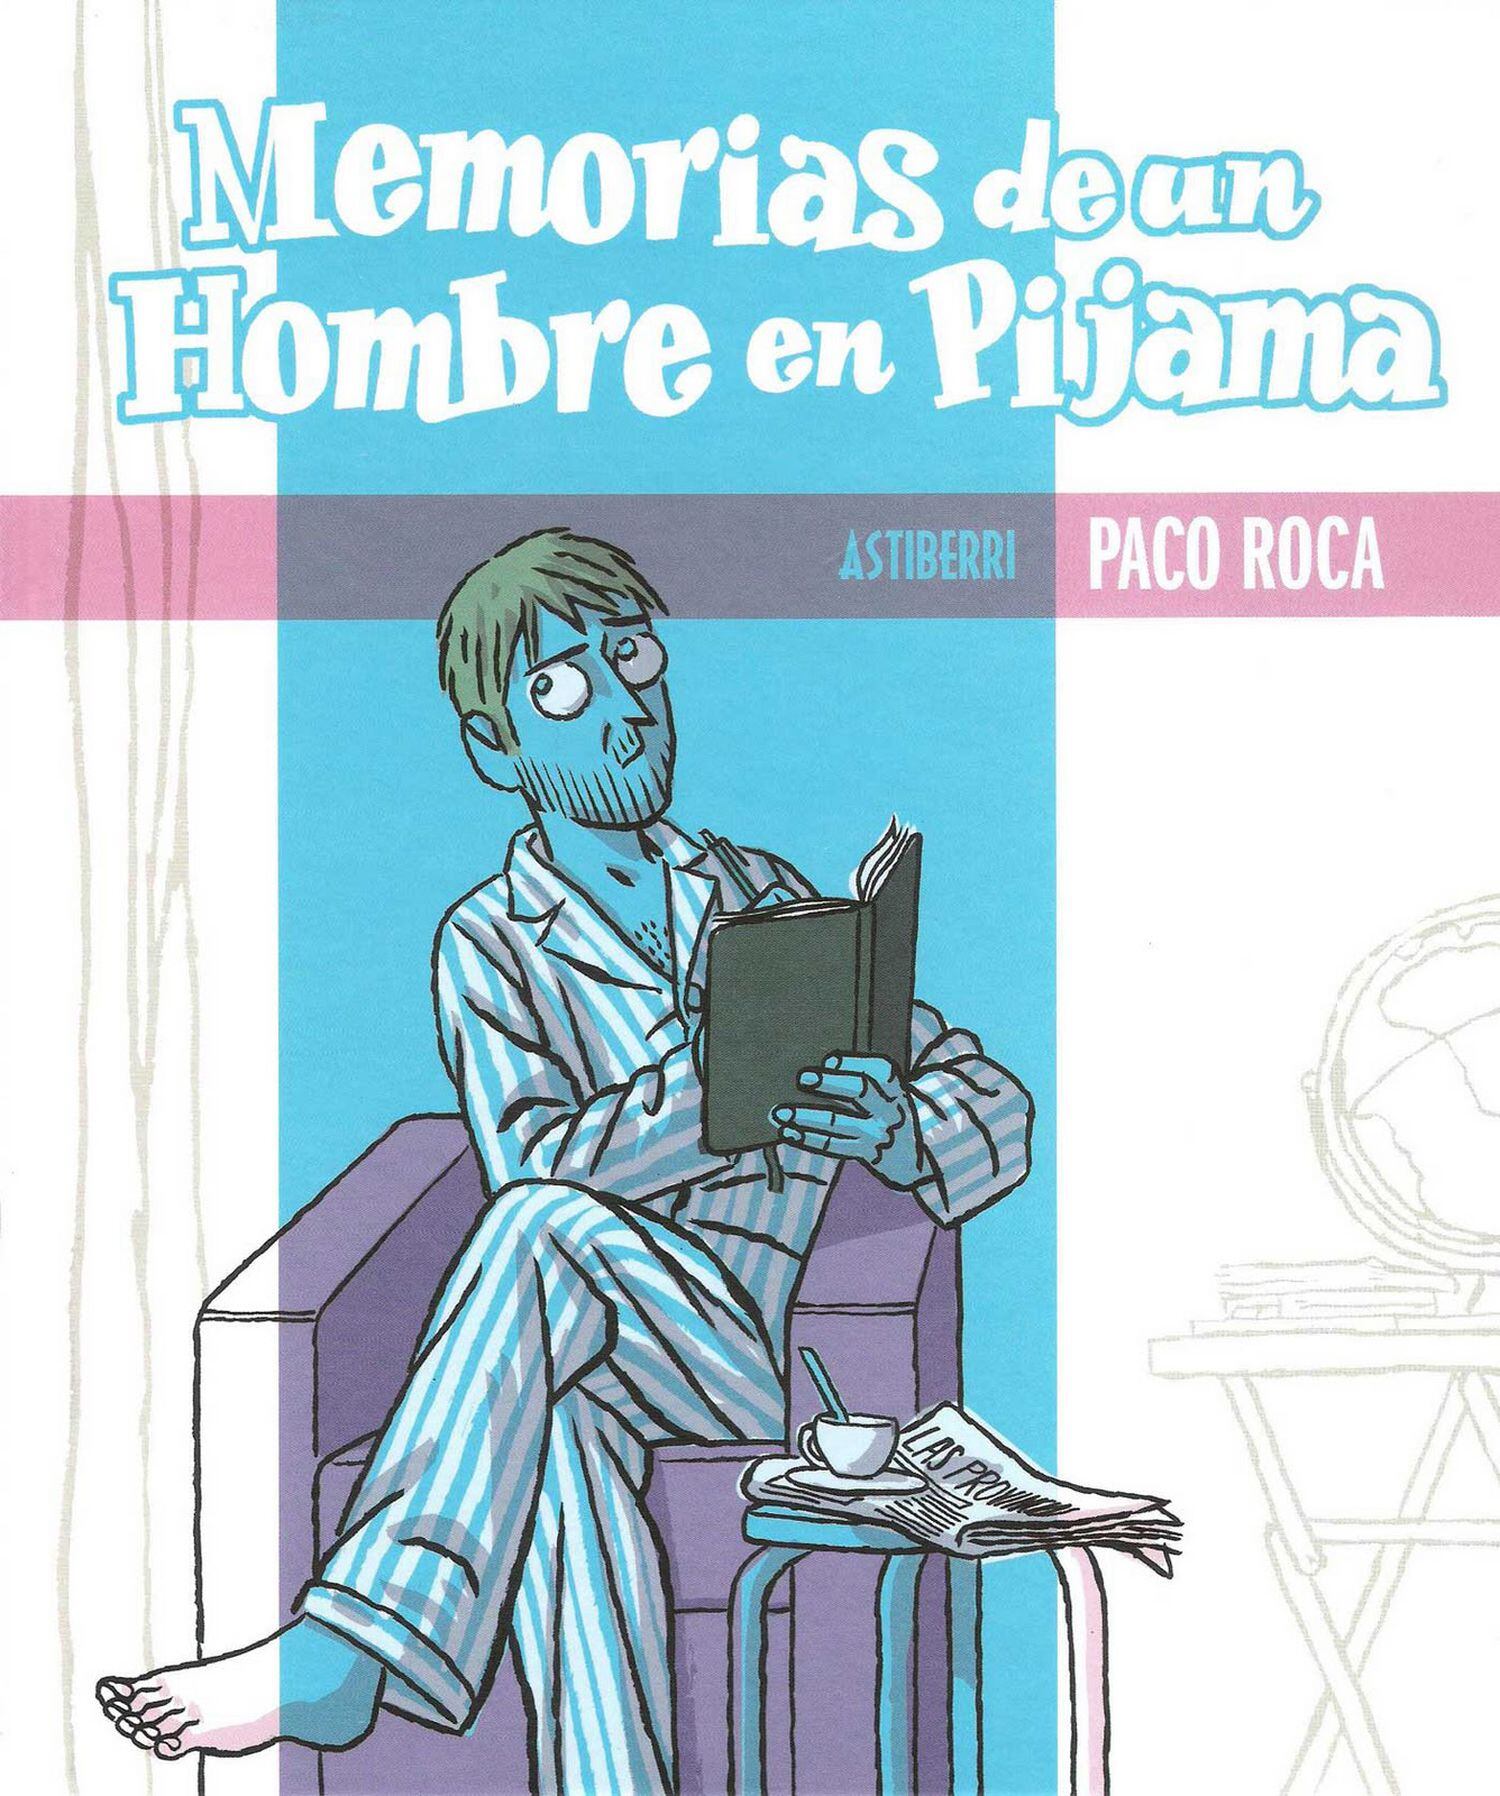 Portada de 'Memorias de un hombre en pijama', de Paco Roca.